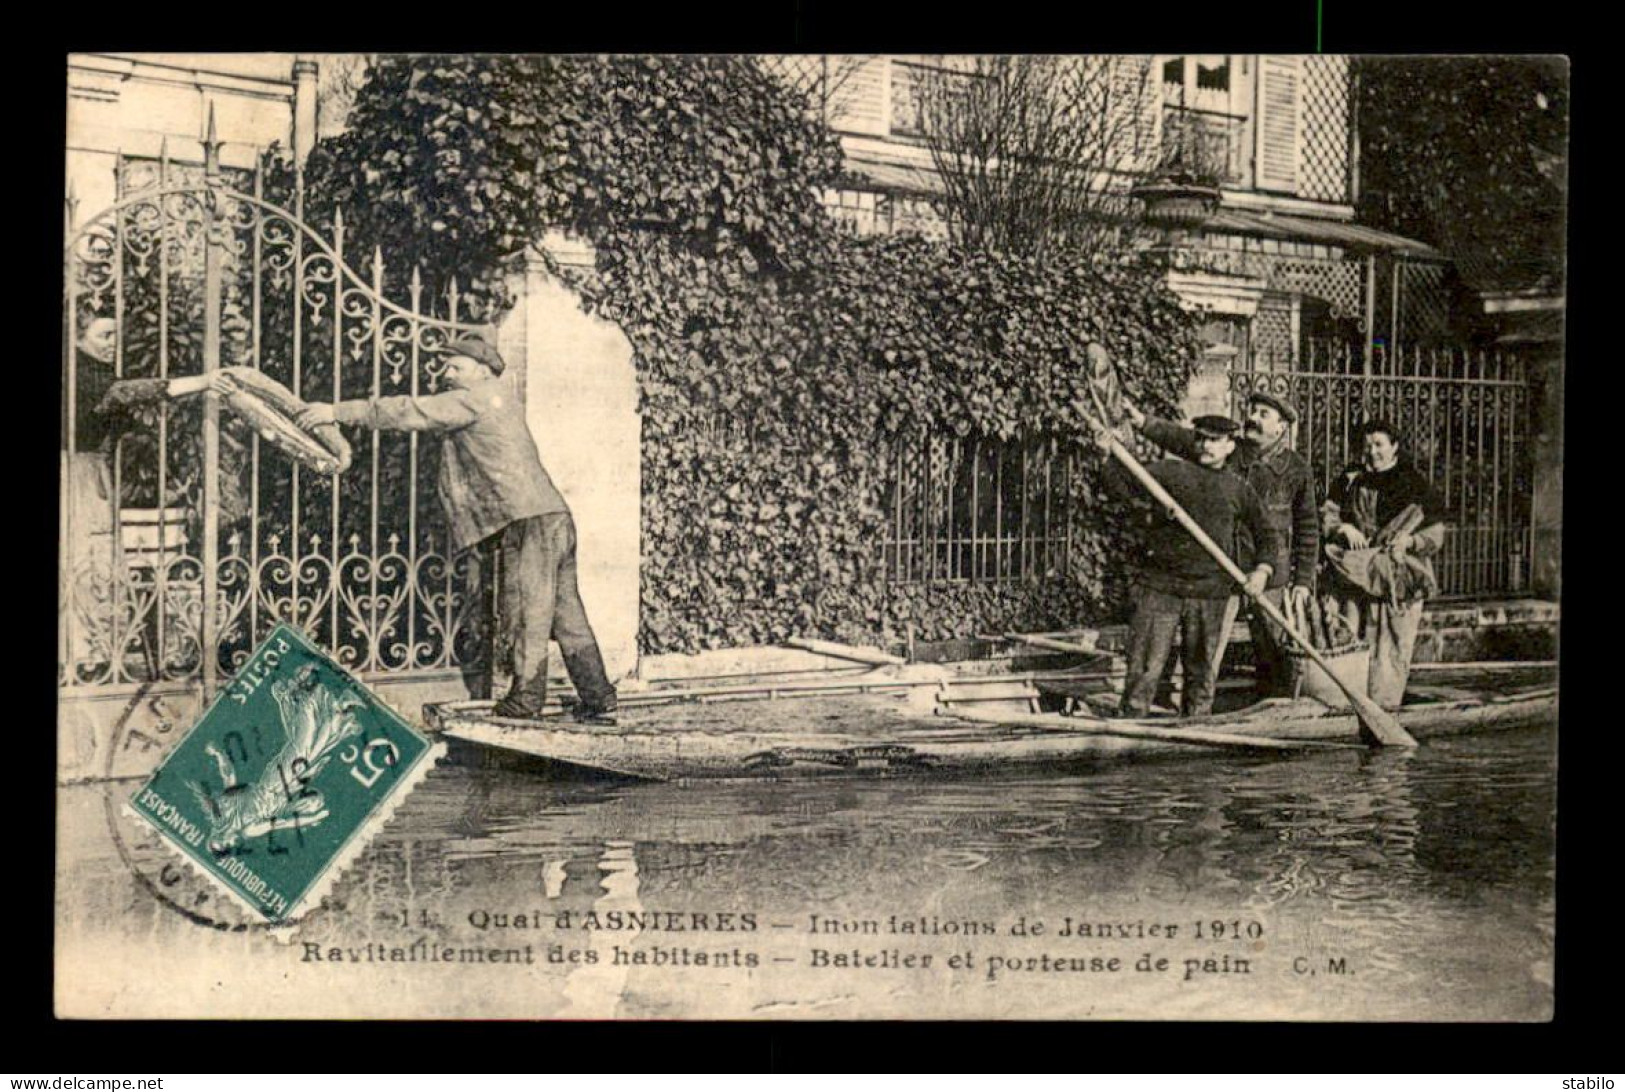 92 - VILLENEUVE-LA-GARENNE - INONDATIONS DE 1910 - QUAI D'ASNIERES - BATELIER PORTEUR DE PAIN - Villeneuve La Garenne